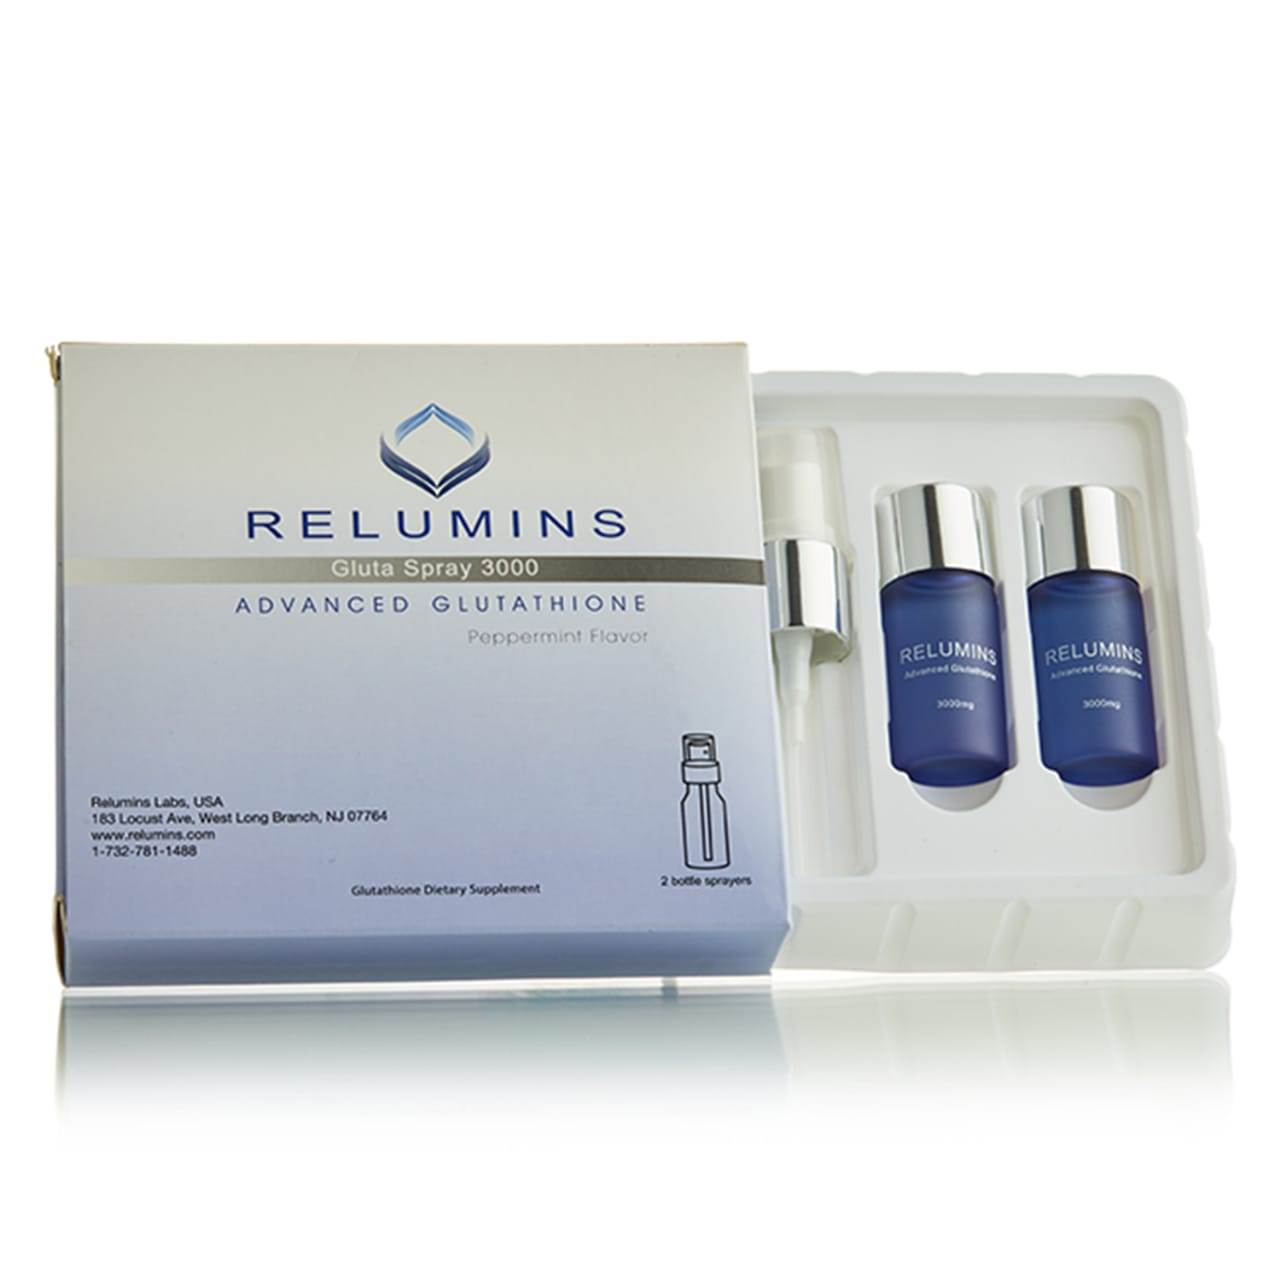 Relumins Gluta Spray 3000 Skin Whitening Glutathione Oral reviews